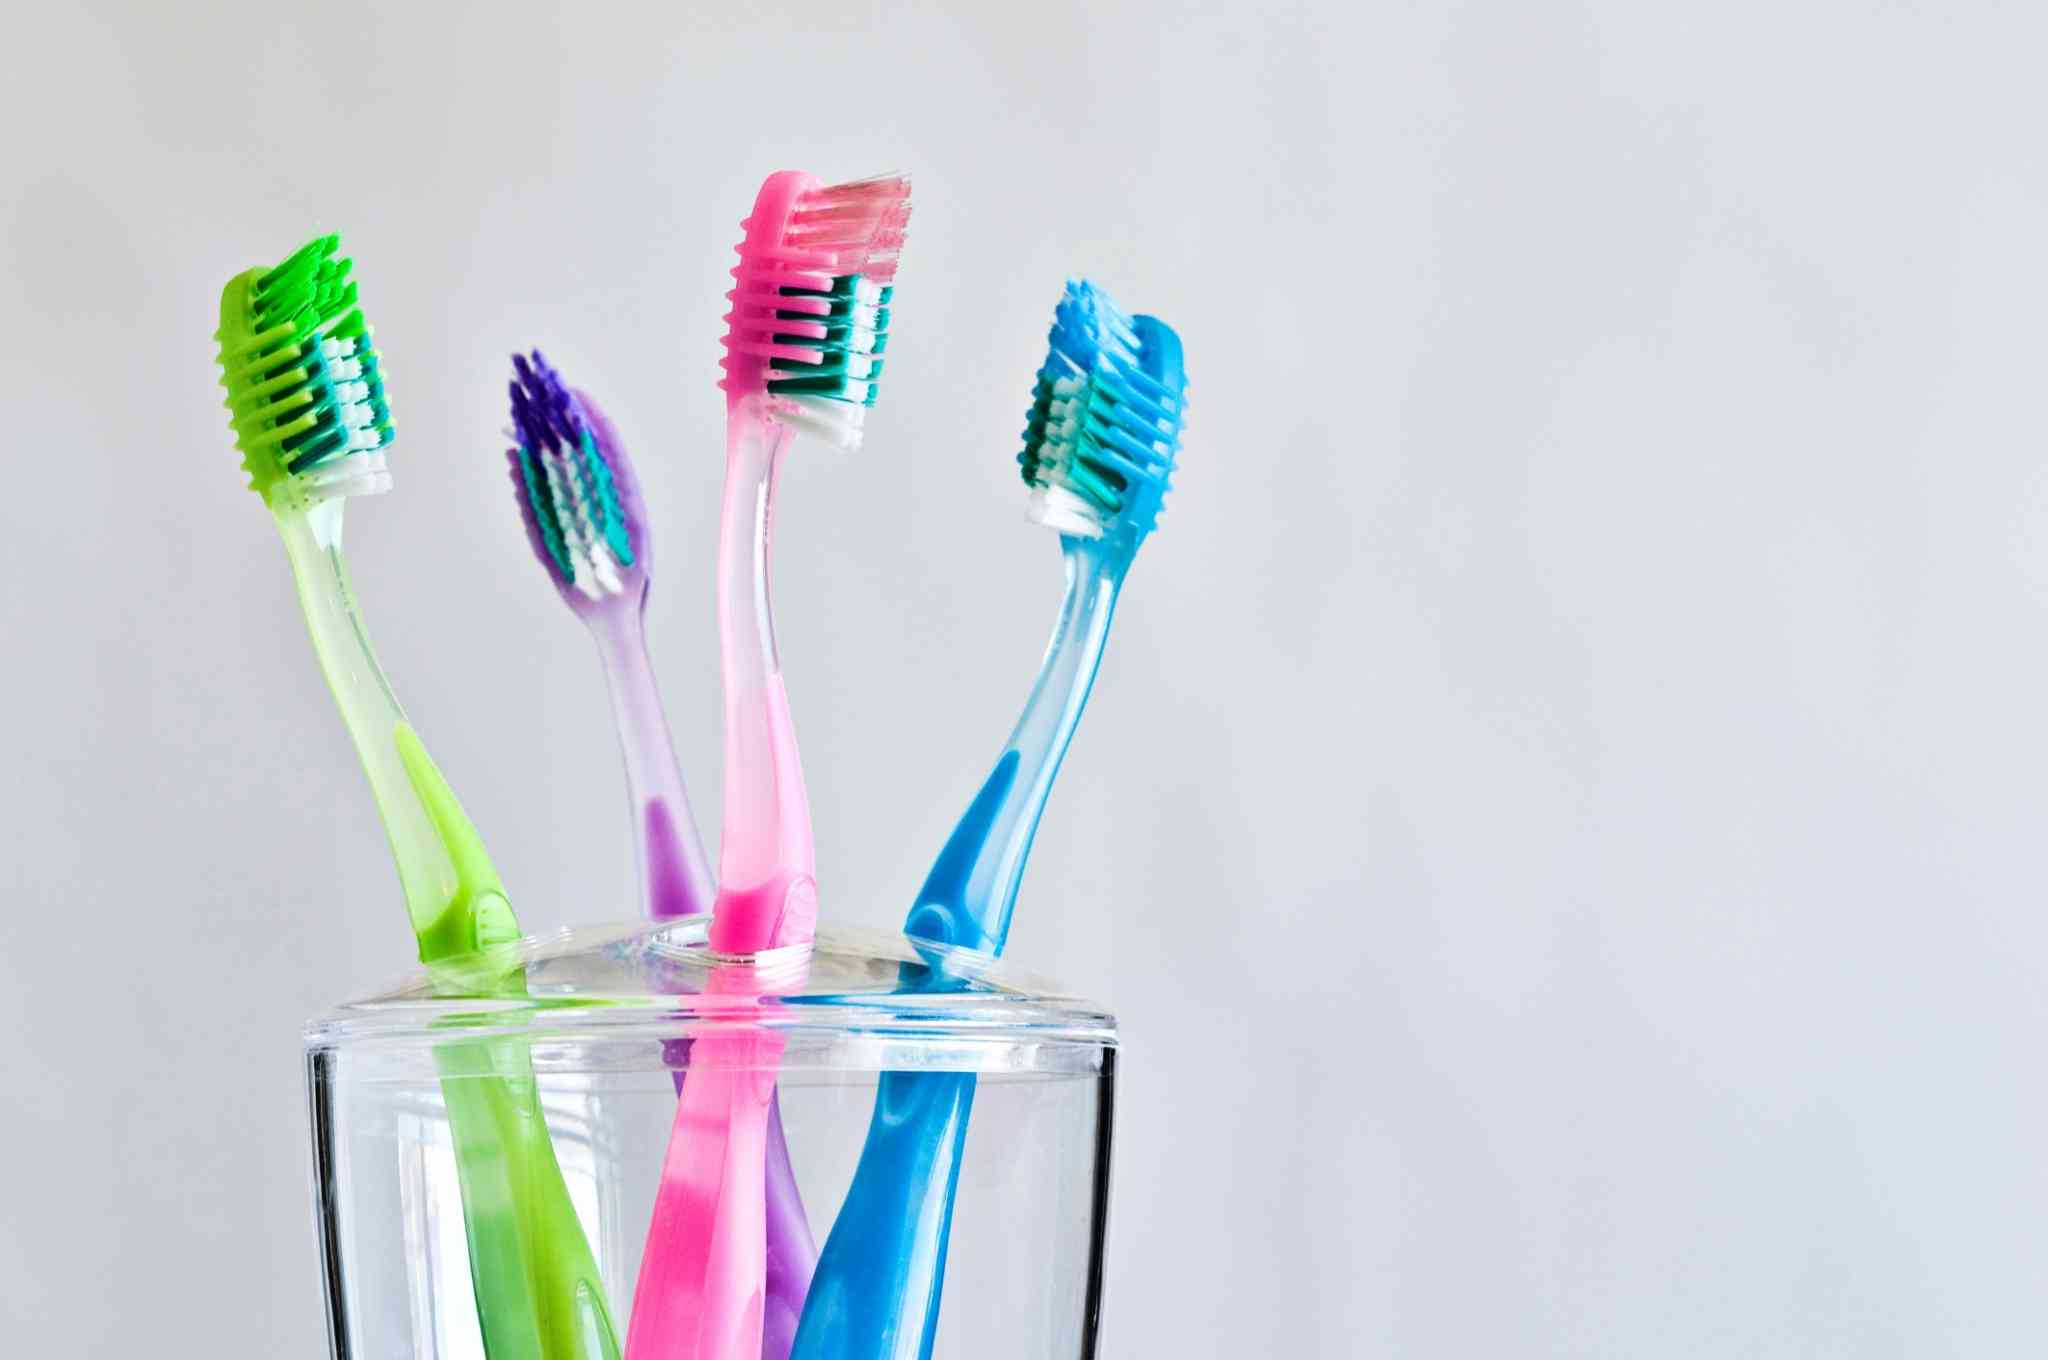 Ihre Zahnbürste kann Millionen von Bakterien enthalten, Loh! So vermeiden Sie kontaminierte Zahnbürsten